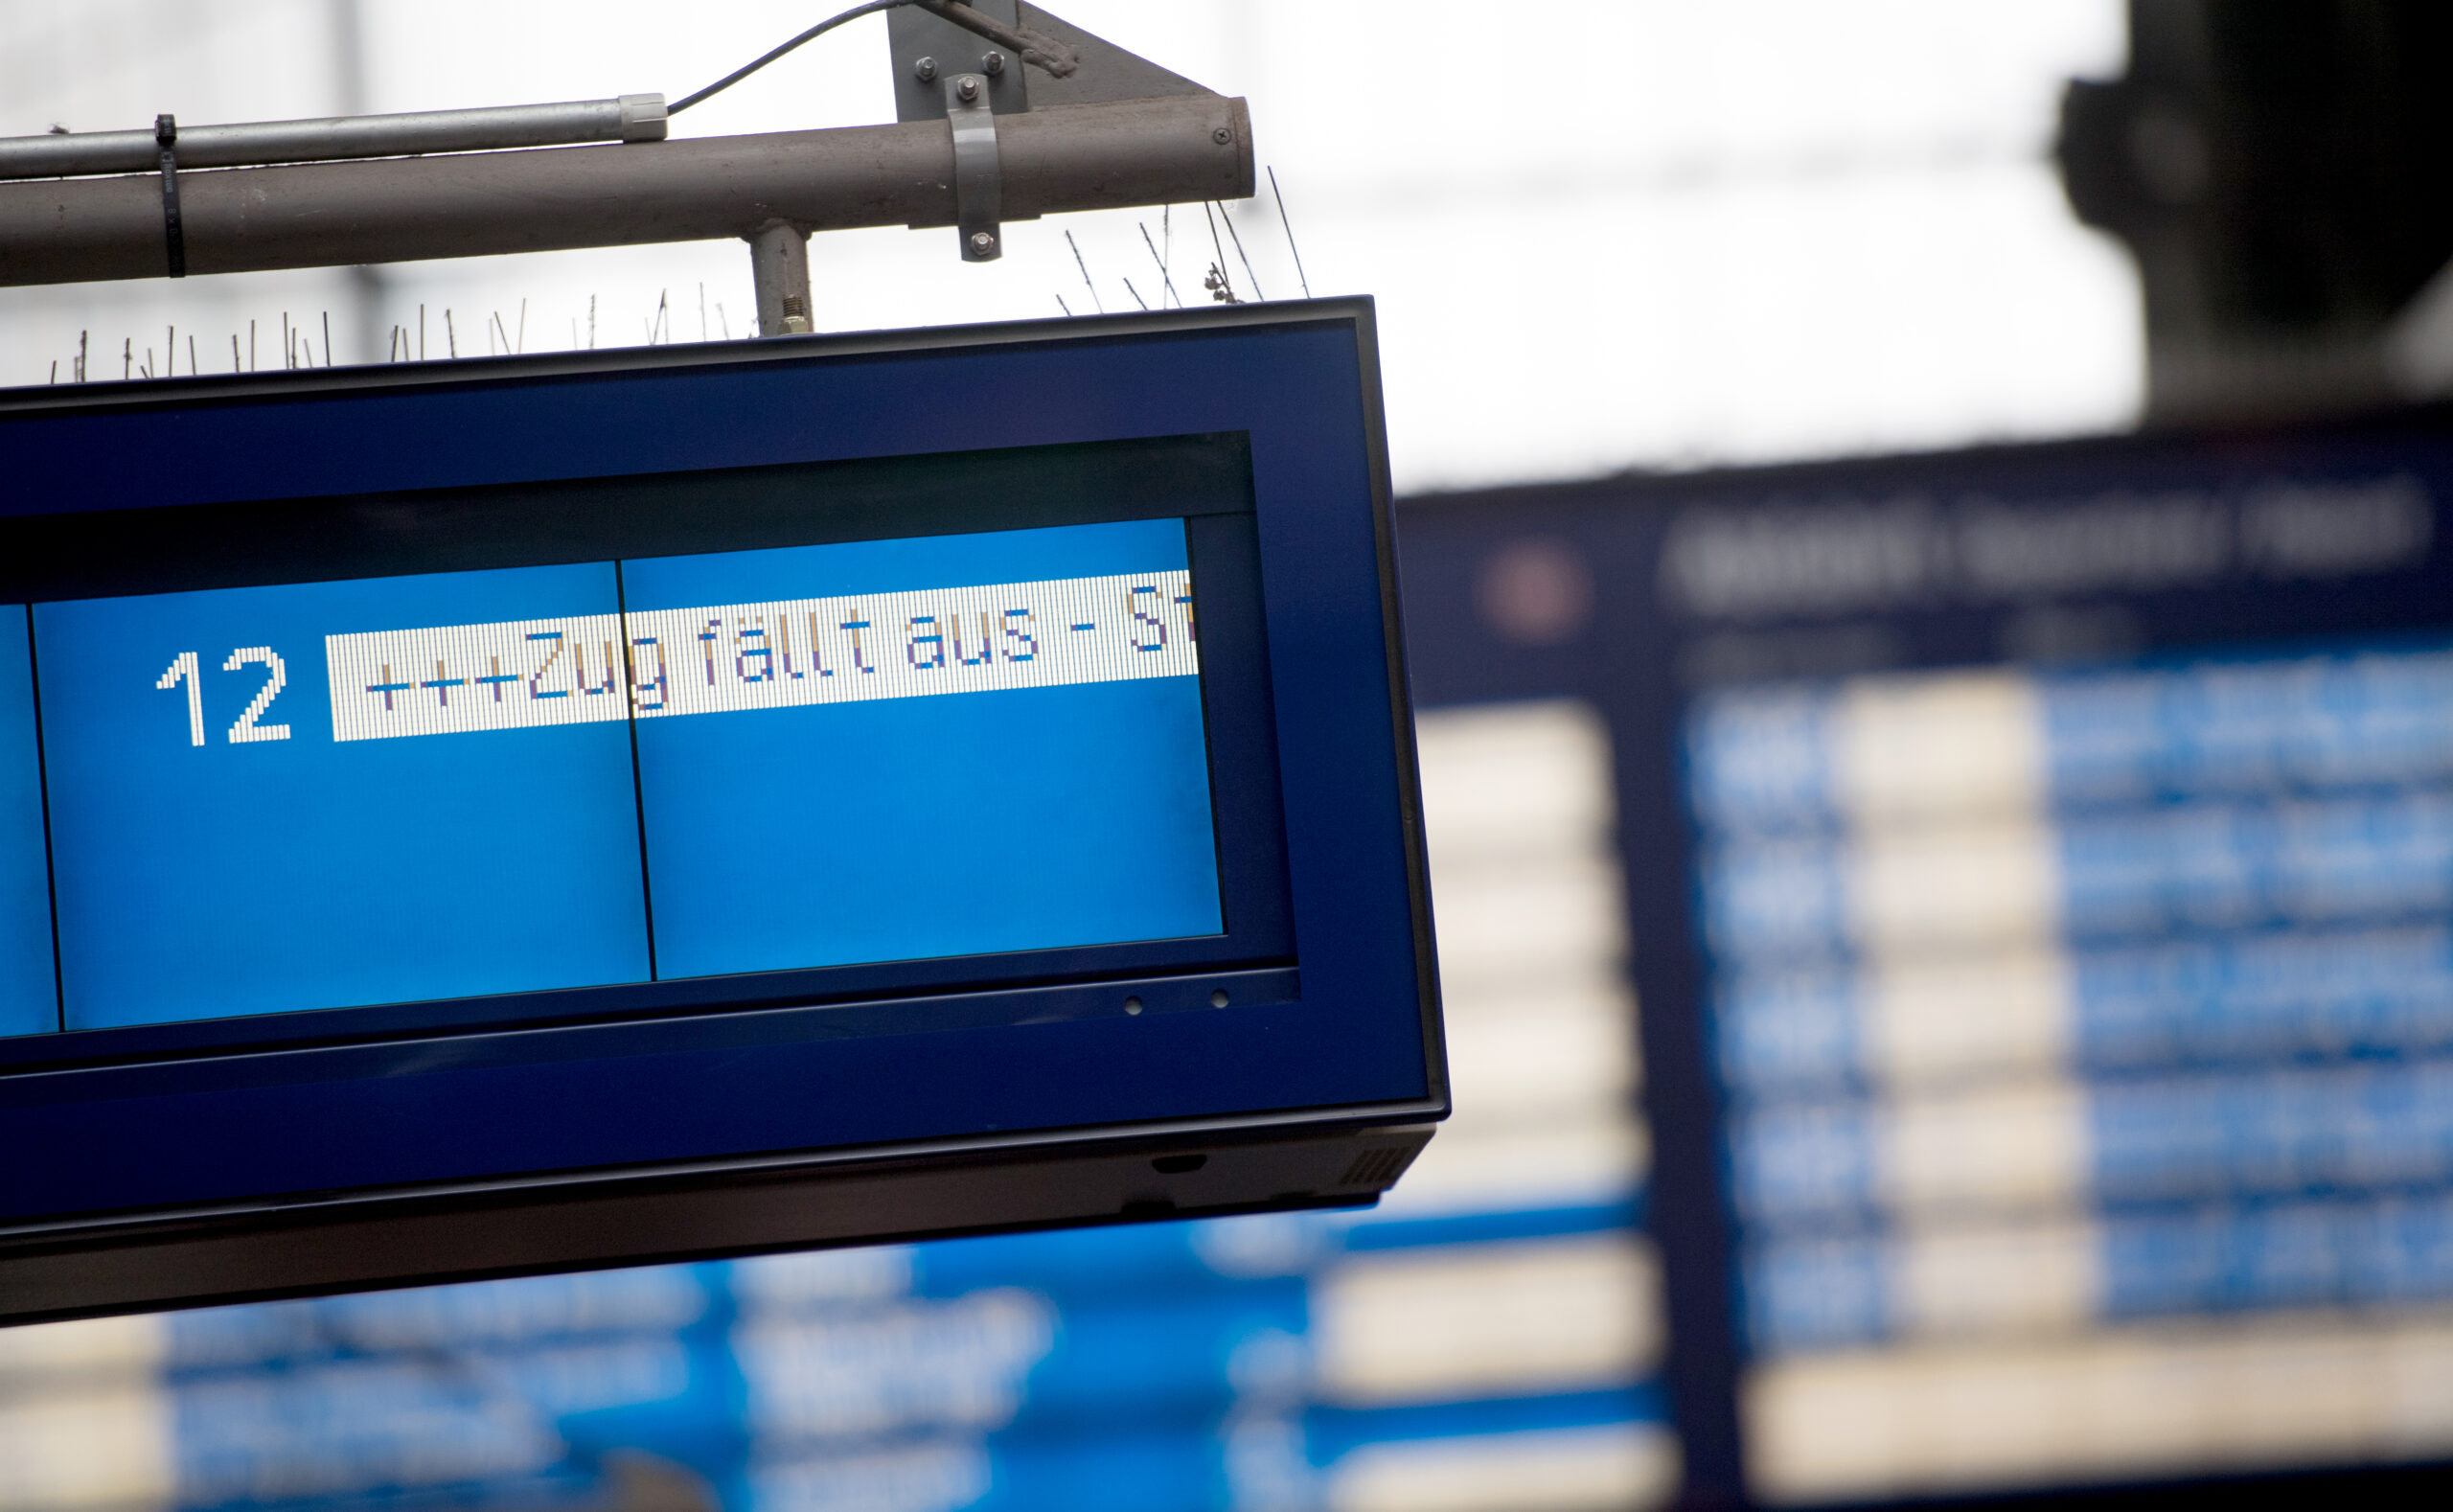 Eine Anzeige an einem Bahnhof informiert über einen ausfallenden Zug. (Symbolbild)